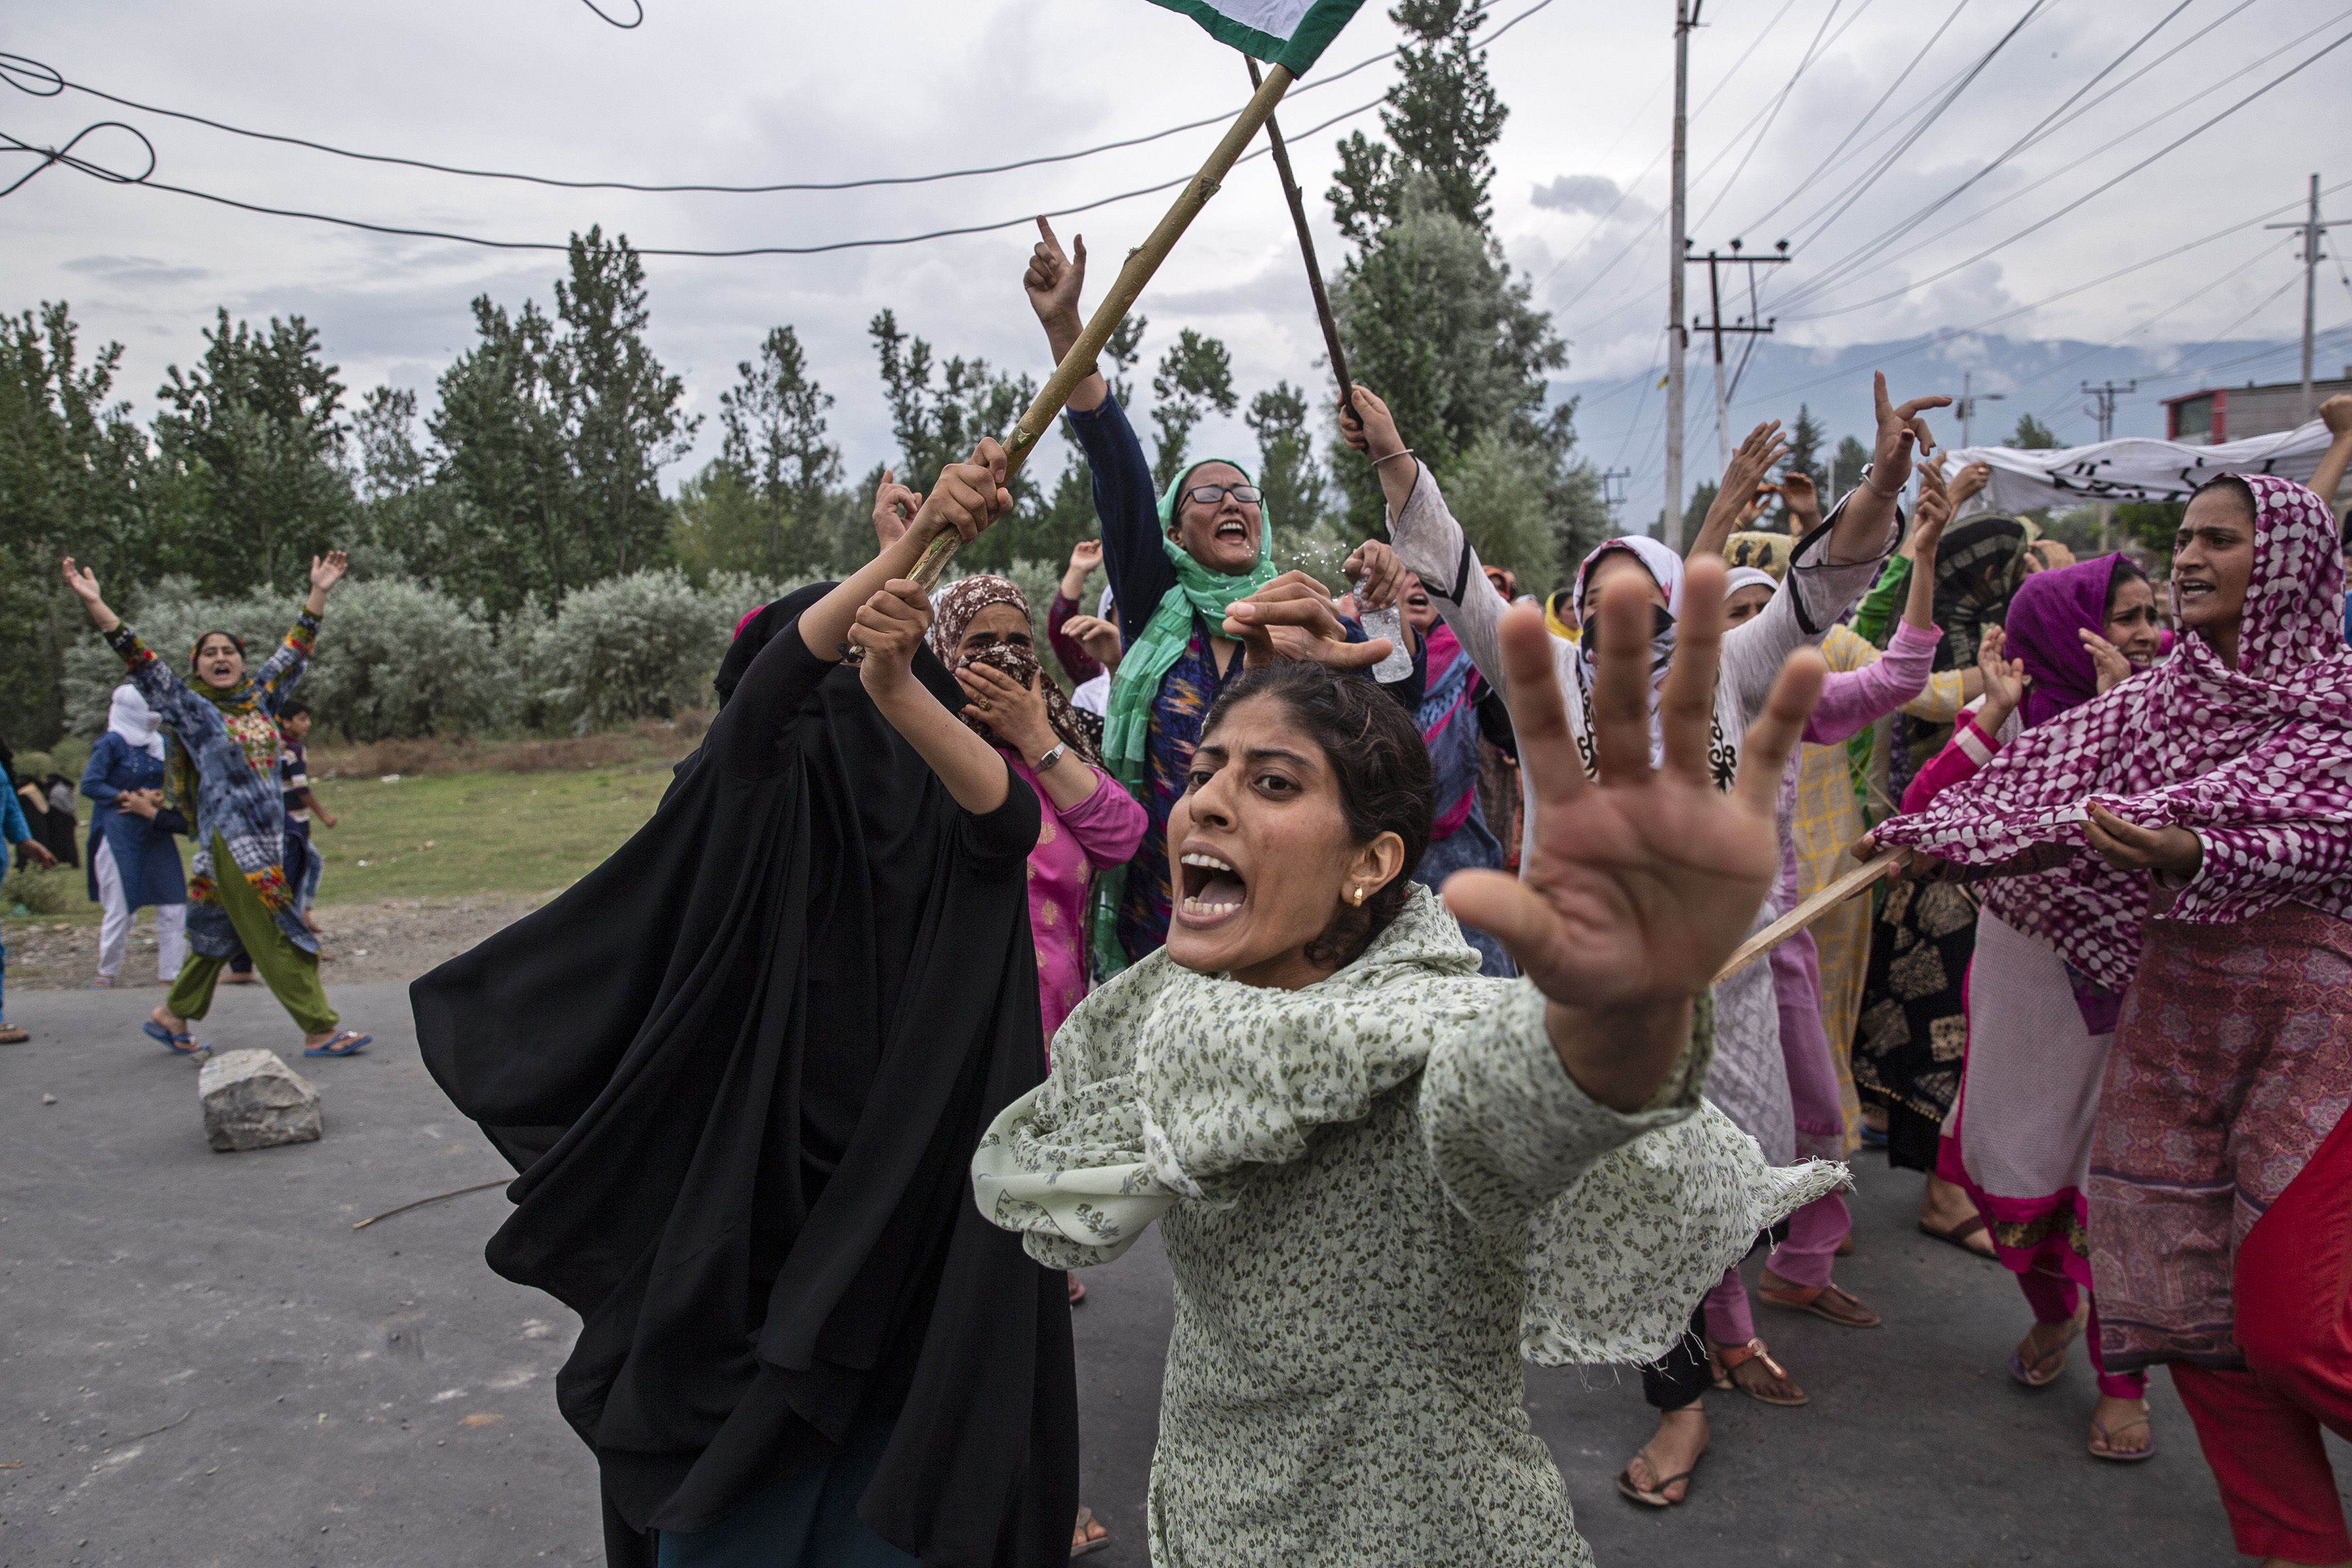 Las mujeres gritan consignas mientras los policías indios disparan gases lacrimógenos y municiones en el aire para detener una marcha de protesta en Srinagar (Foto AP / Dar Yasin)